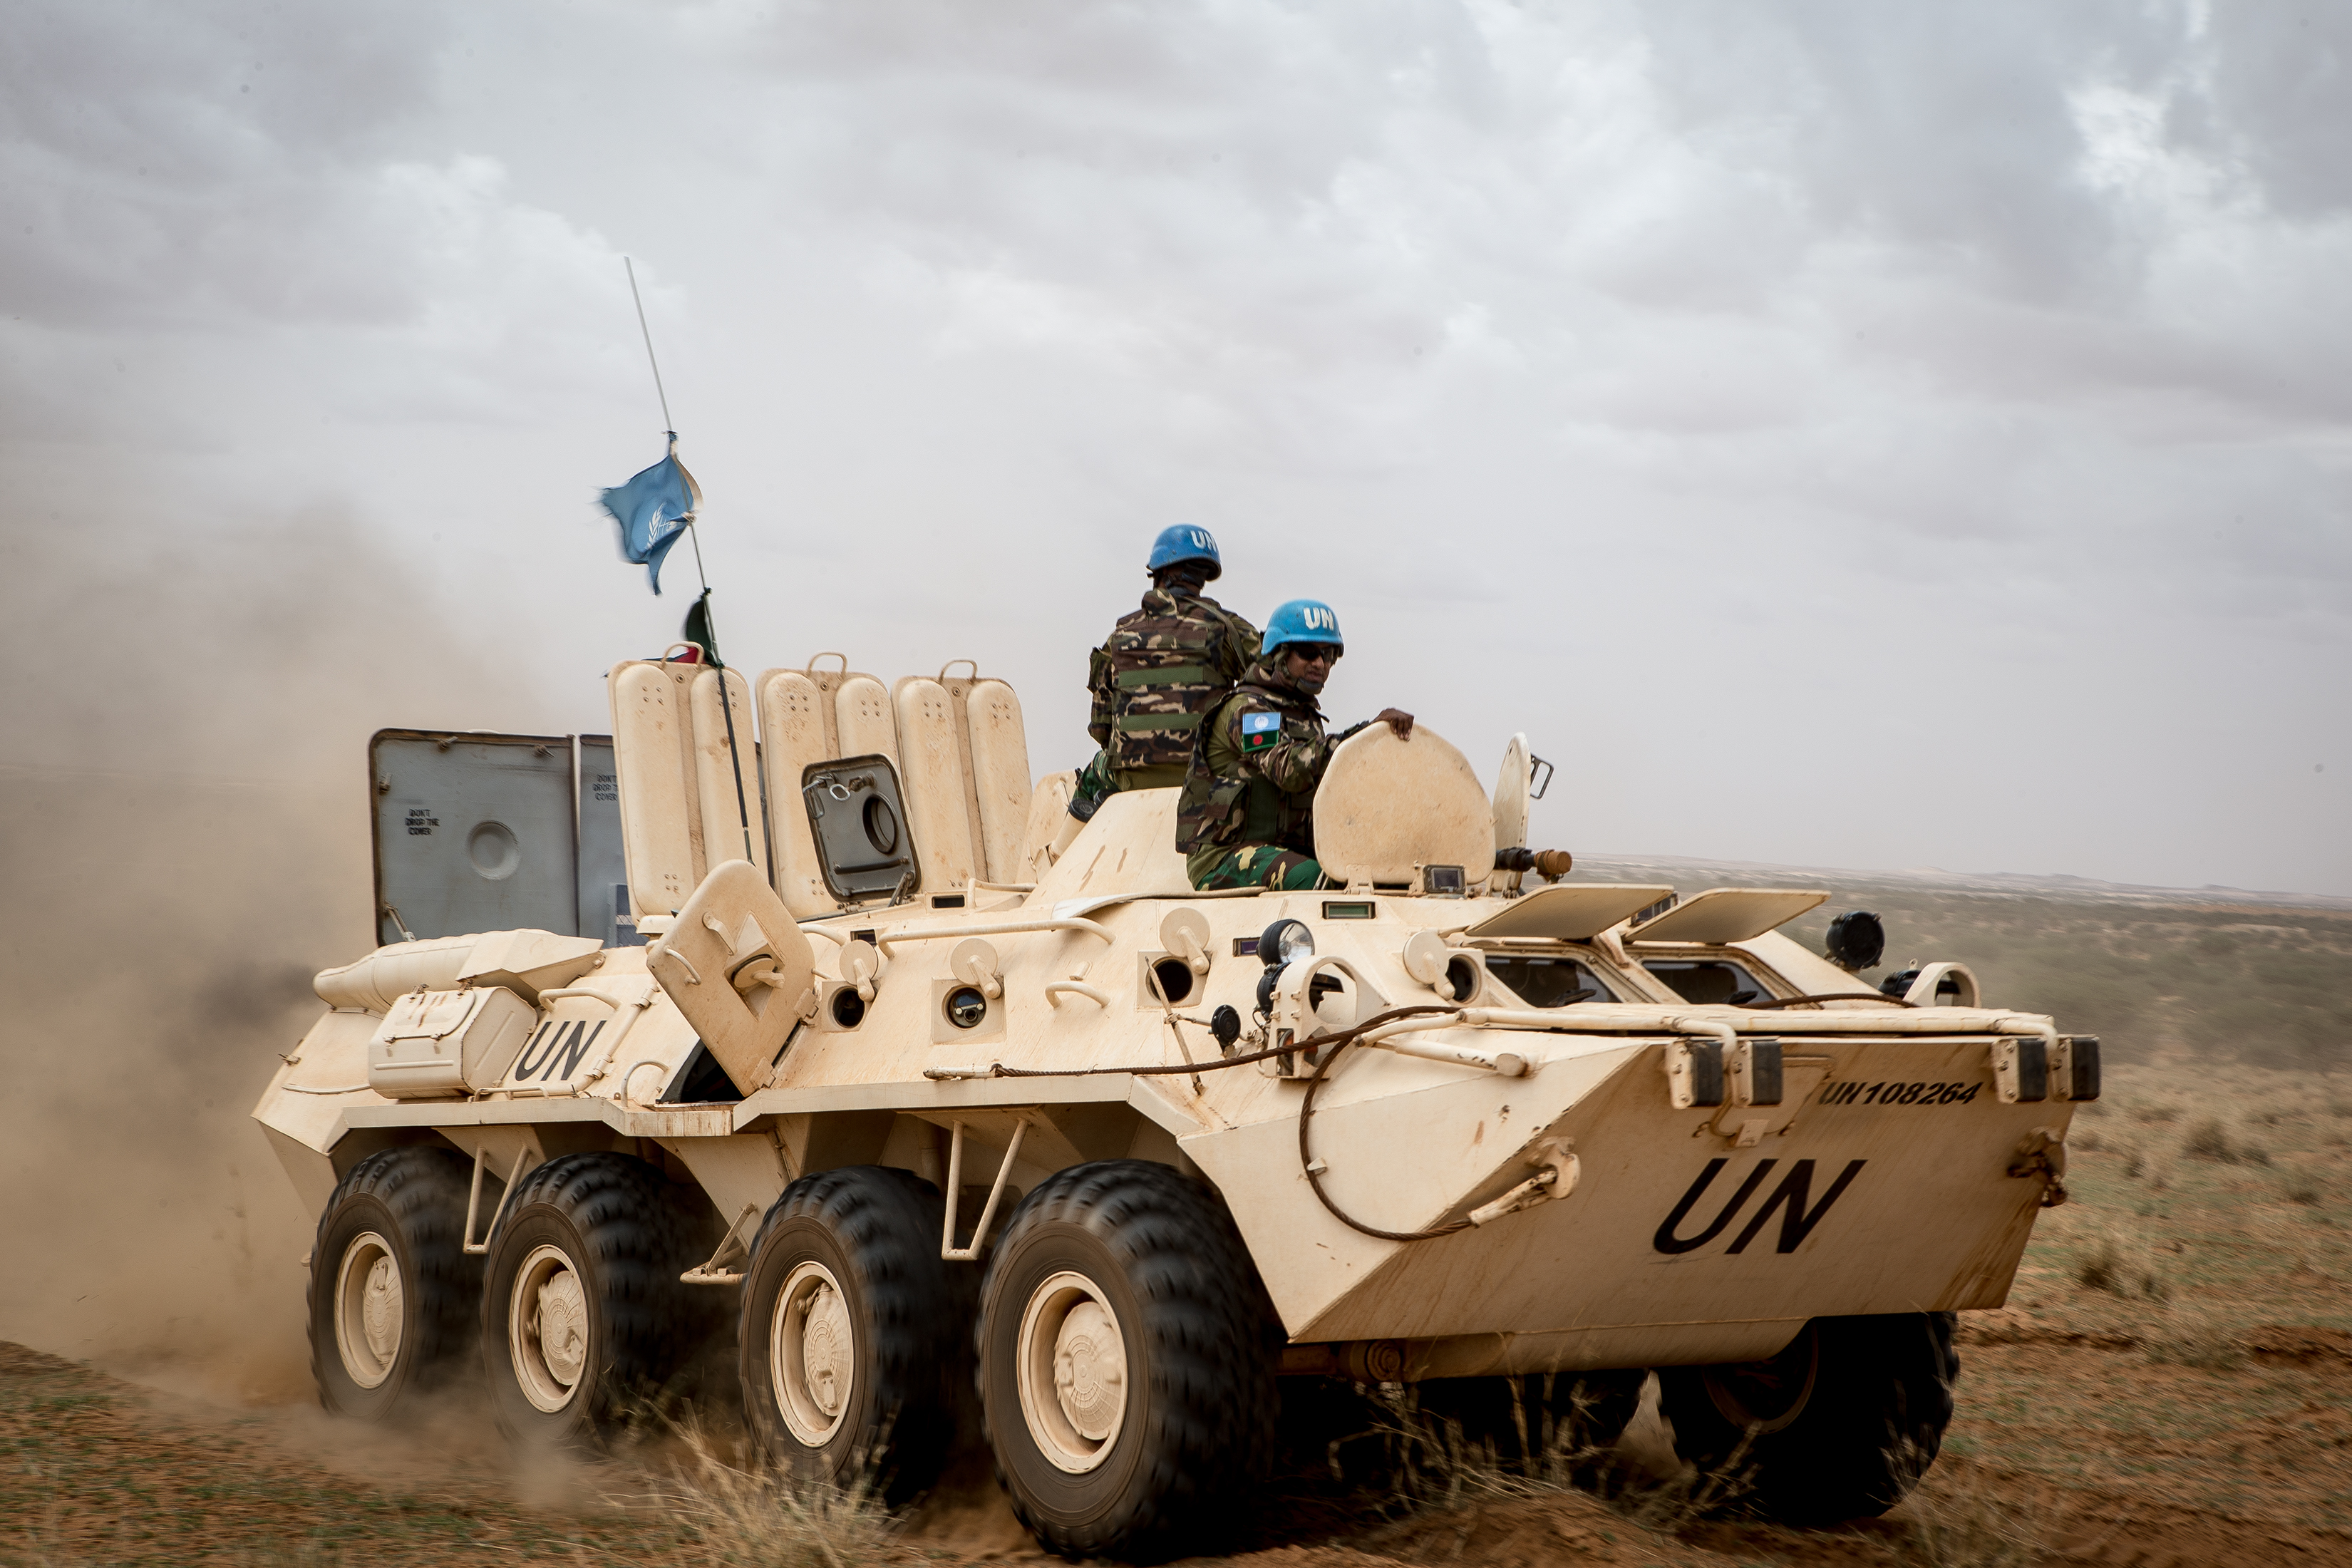 Cascos azules de la MINUSMA (Misión Multidimensional Integrada de
Estabilización de las Naciones Unidas en Malí) durante la Operación Militar 'FRELANA' para proteger a los civiles y sus propiedades.